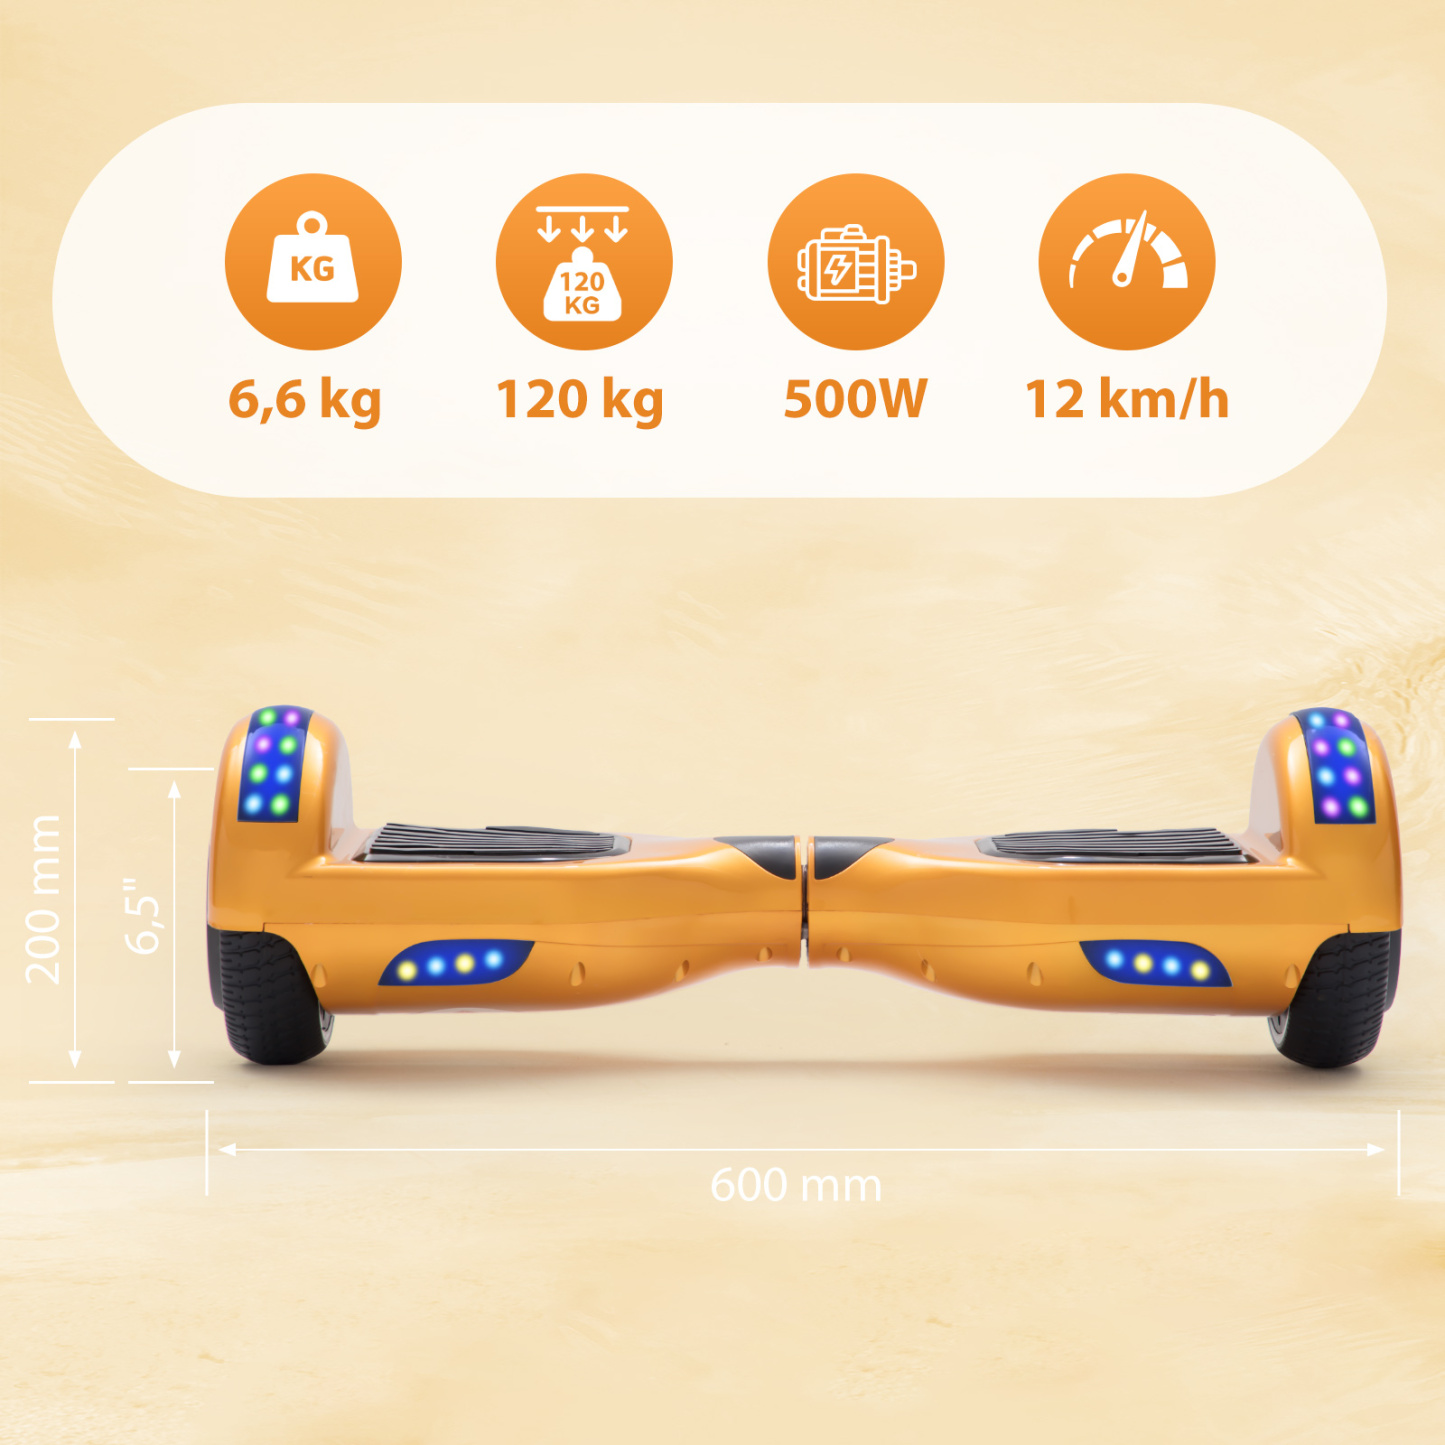 Neues 6,5" Hoverboard gold mit Bluetooth Musik Lautsprecher und LED Licht - 500W 12km/h